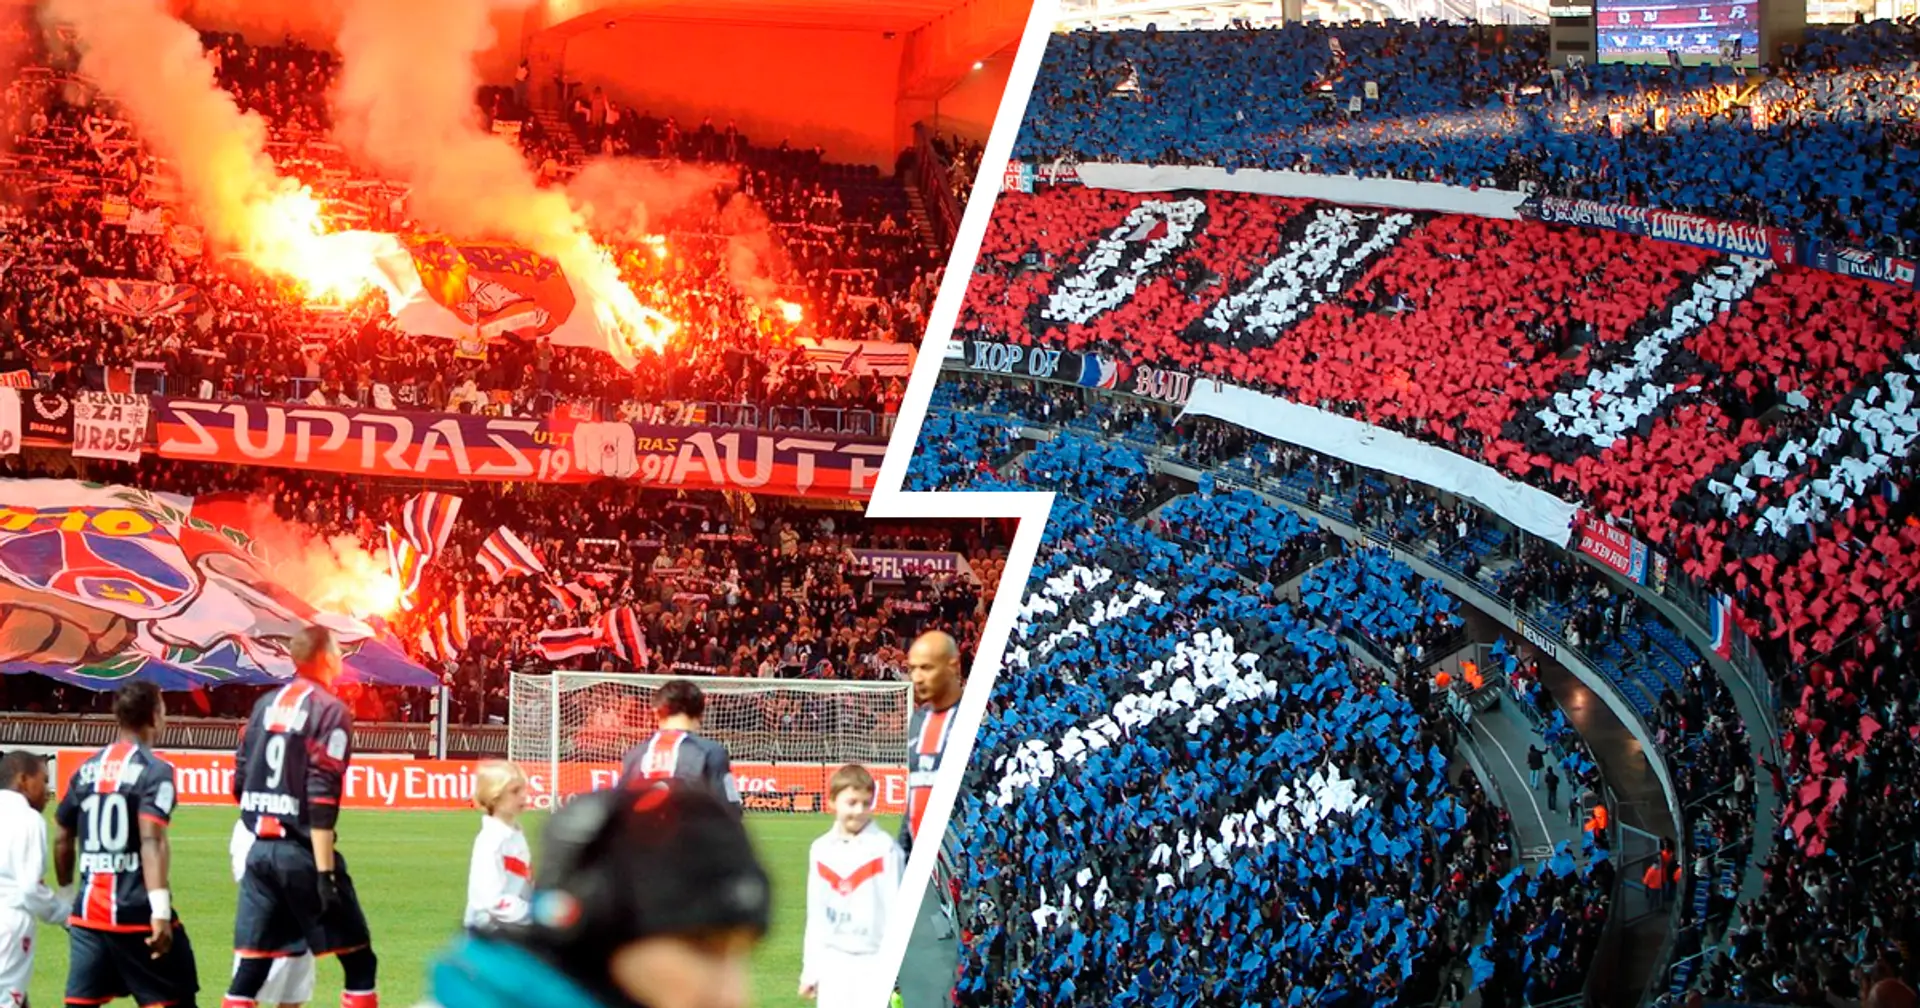 Nach Top-Atmosphäre im Hinspiel: PSG-Ultras kündigen "Vulkan" gegen Dortmund an